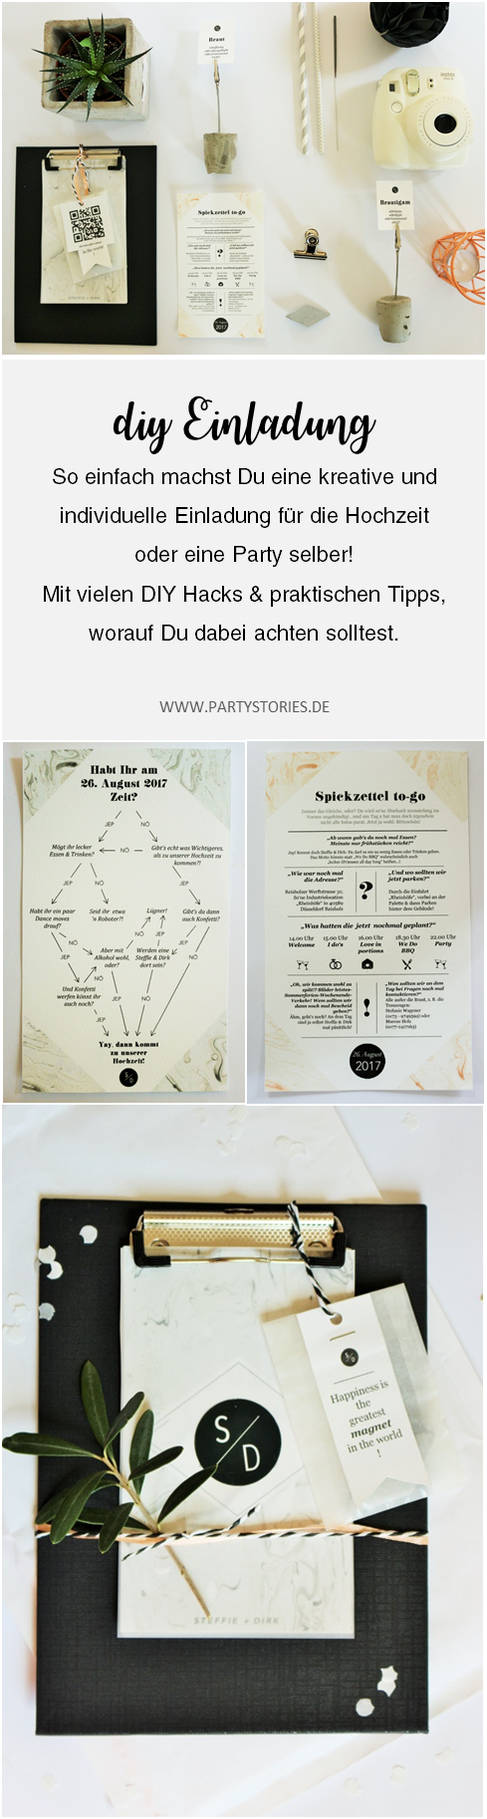 Bild: Idee für DIY Einladung - eine kreative und individuelle Einladung für die Hochzeit oder Party selber machen, zum Beispiel auf dem Klemmbrett, mit vielen DIY Tipps und Tricks, gefunden auf www.partystories.de